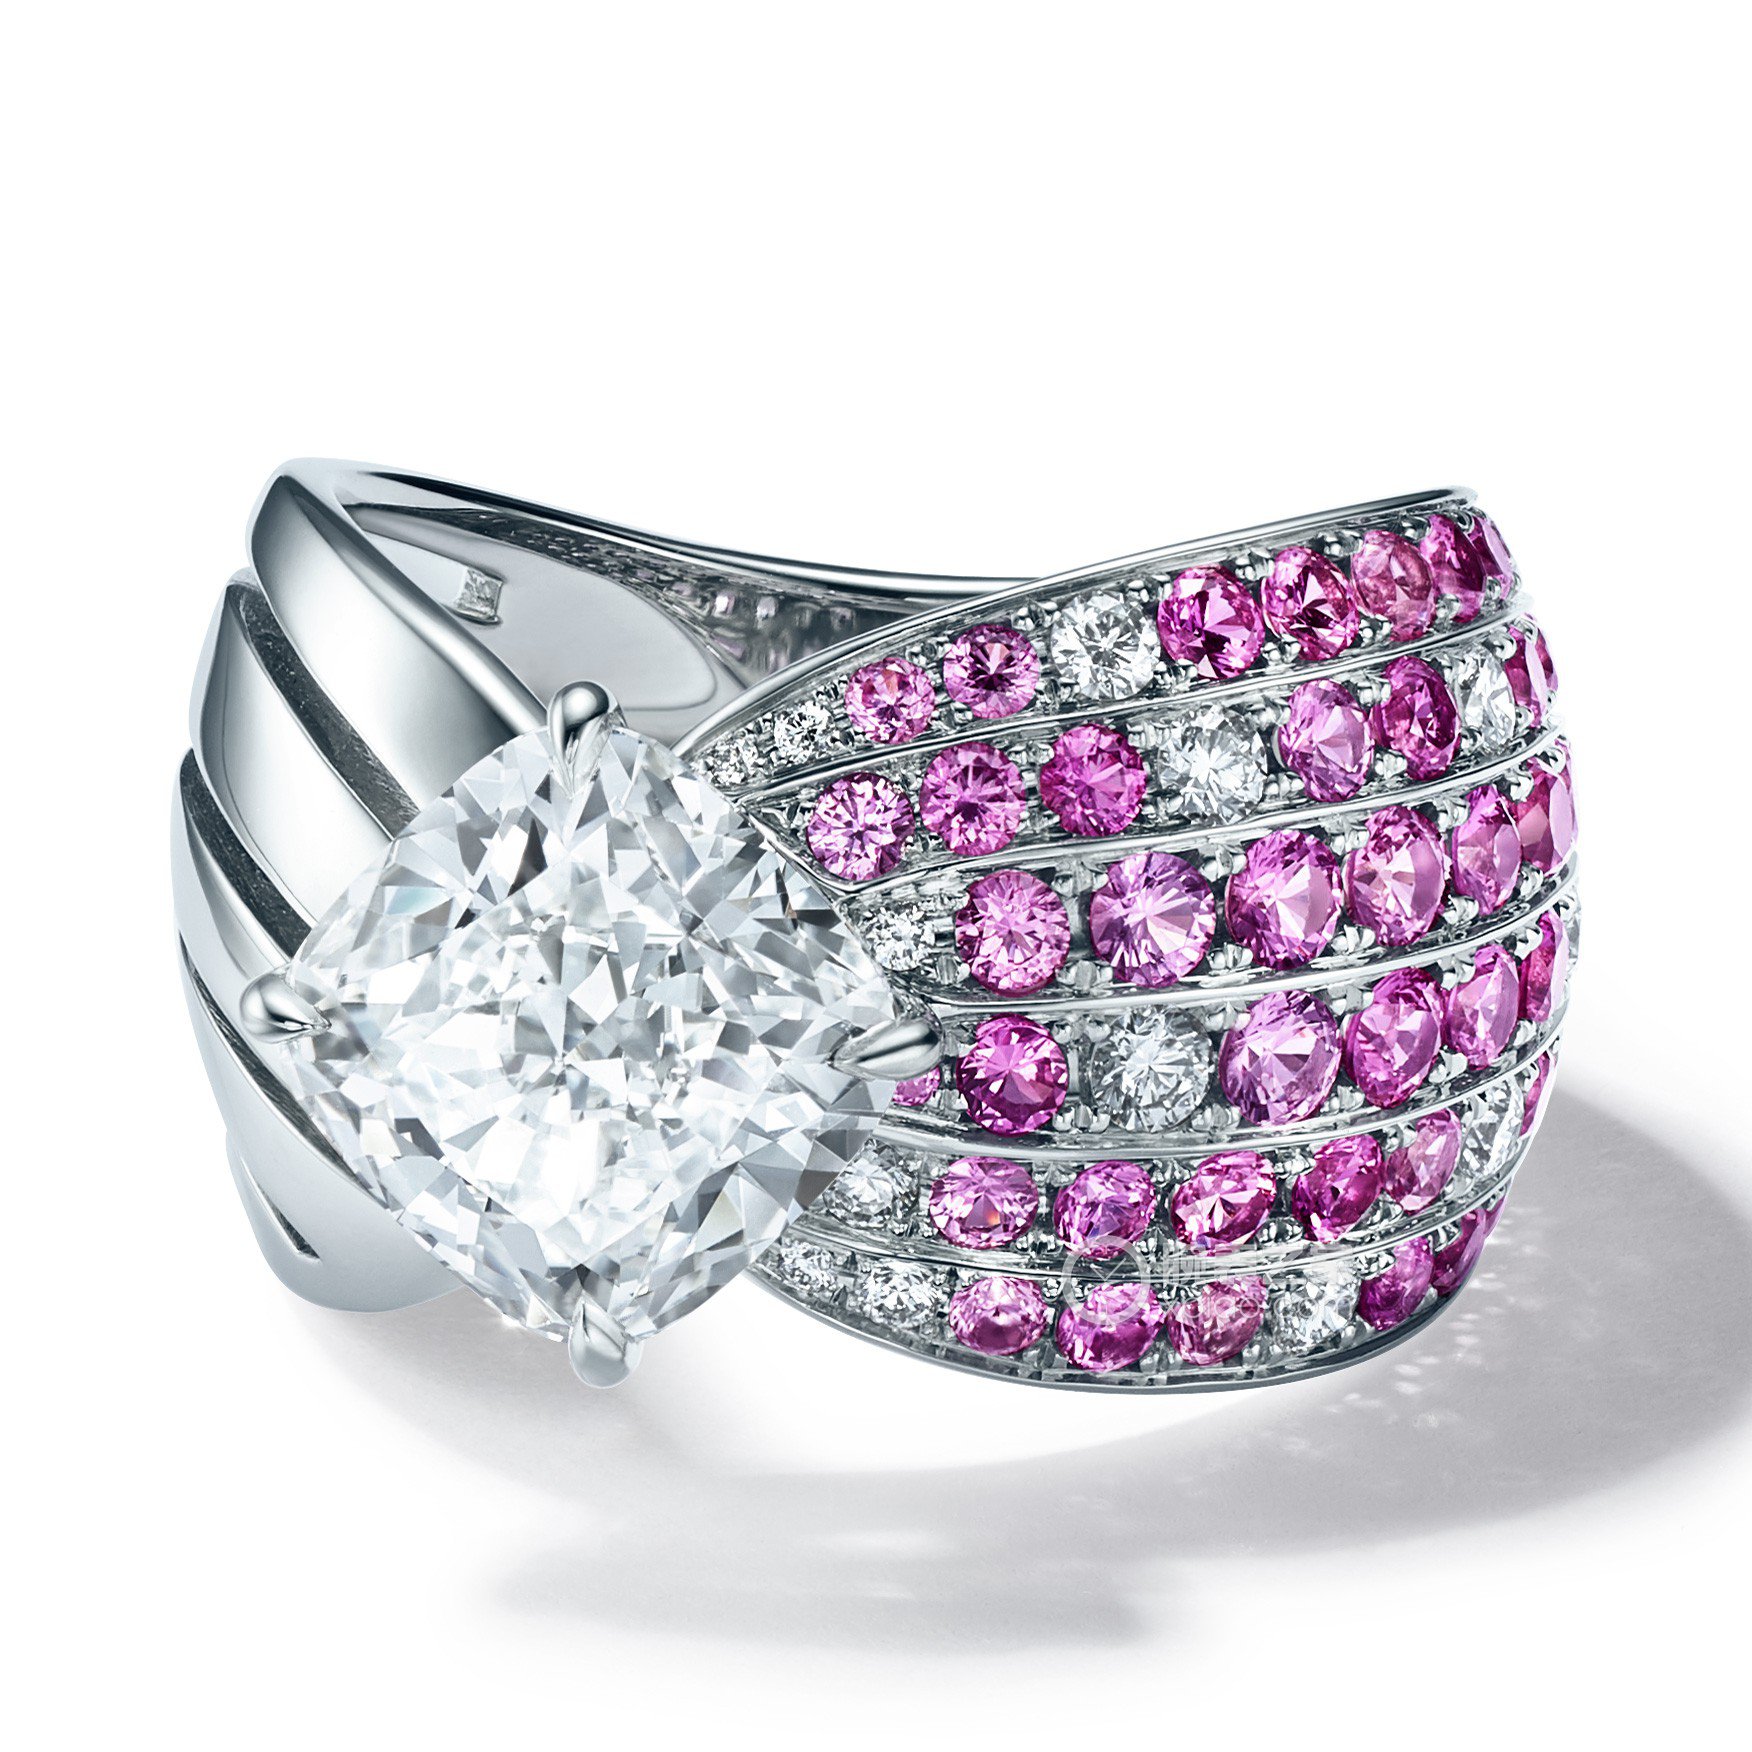 高清图|蒂芙尼订婚戒指Tiffany® Setting钻戒戒指图片4|腕表之家-珠宝